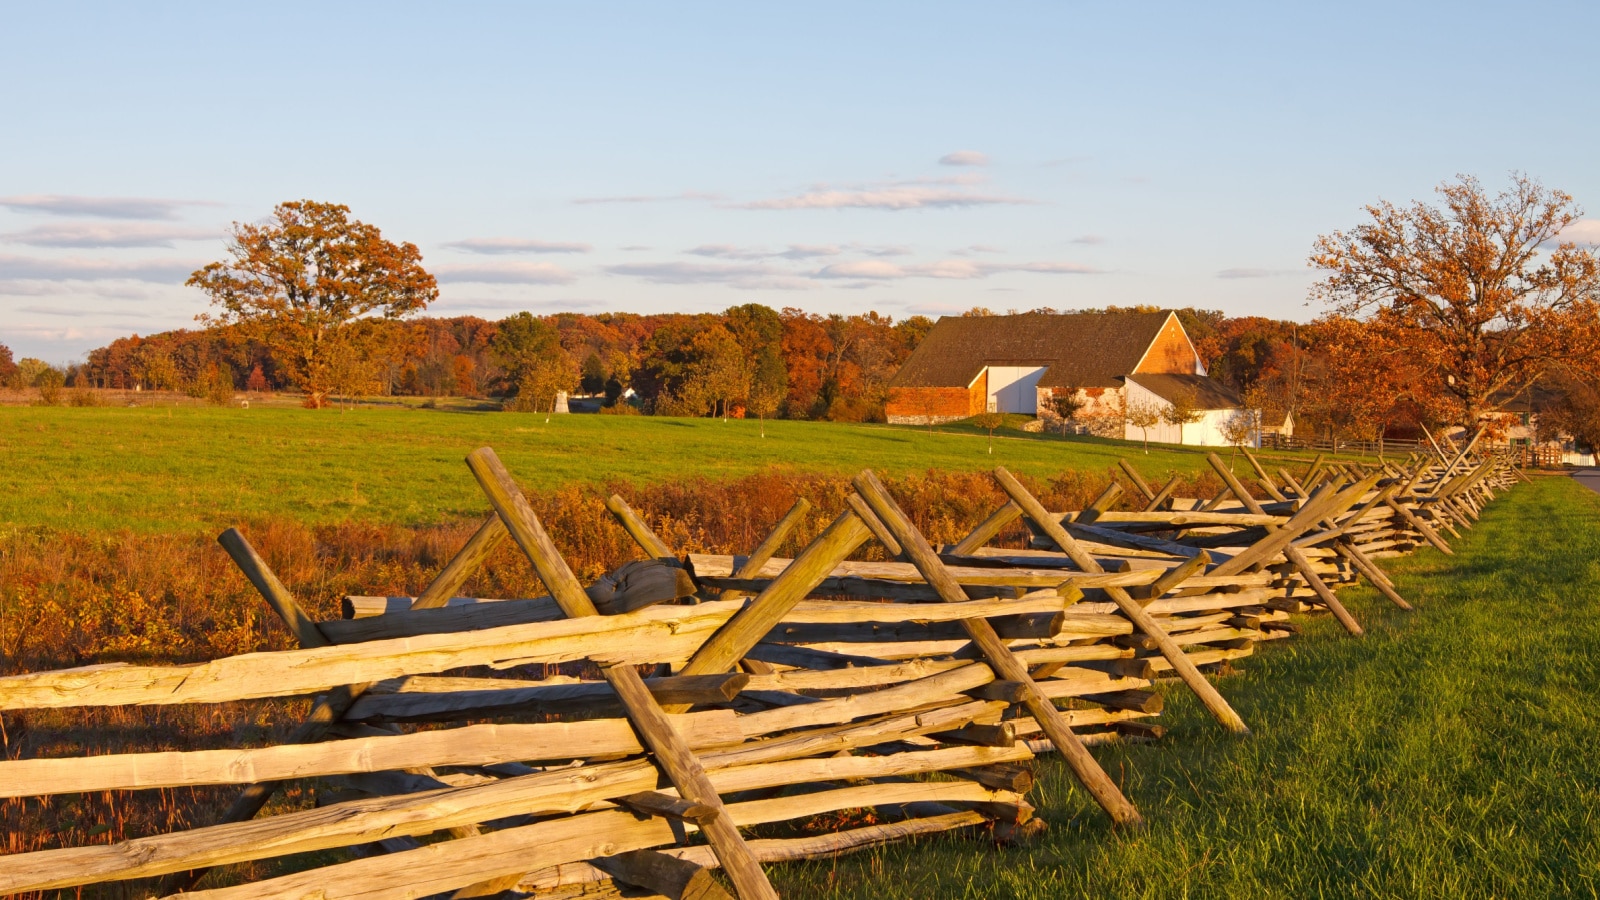 A farmstead on the battlefield at Gettysburg National Military Park,Pennsylvania,USA.